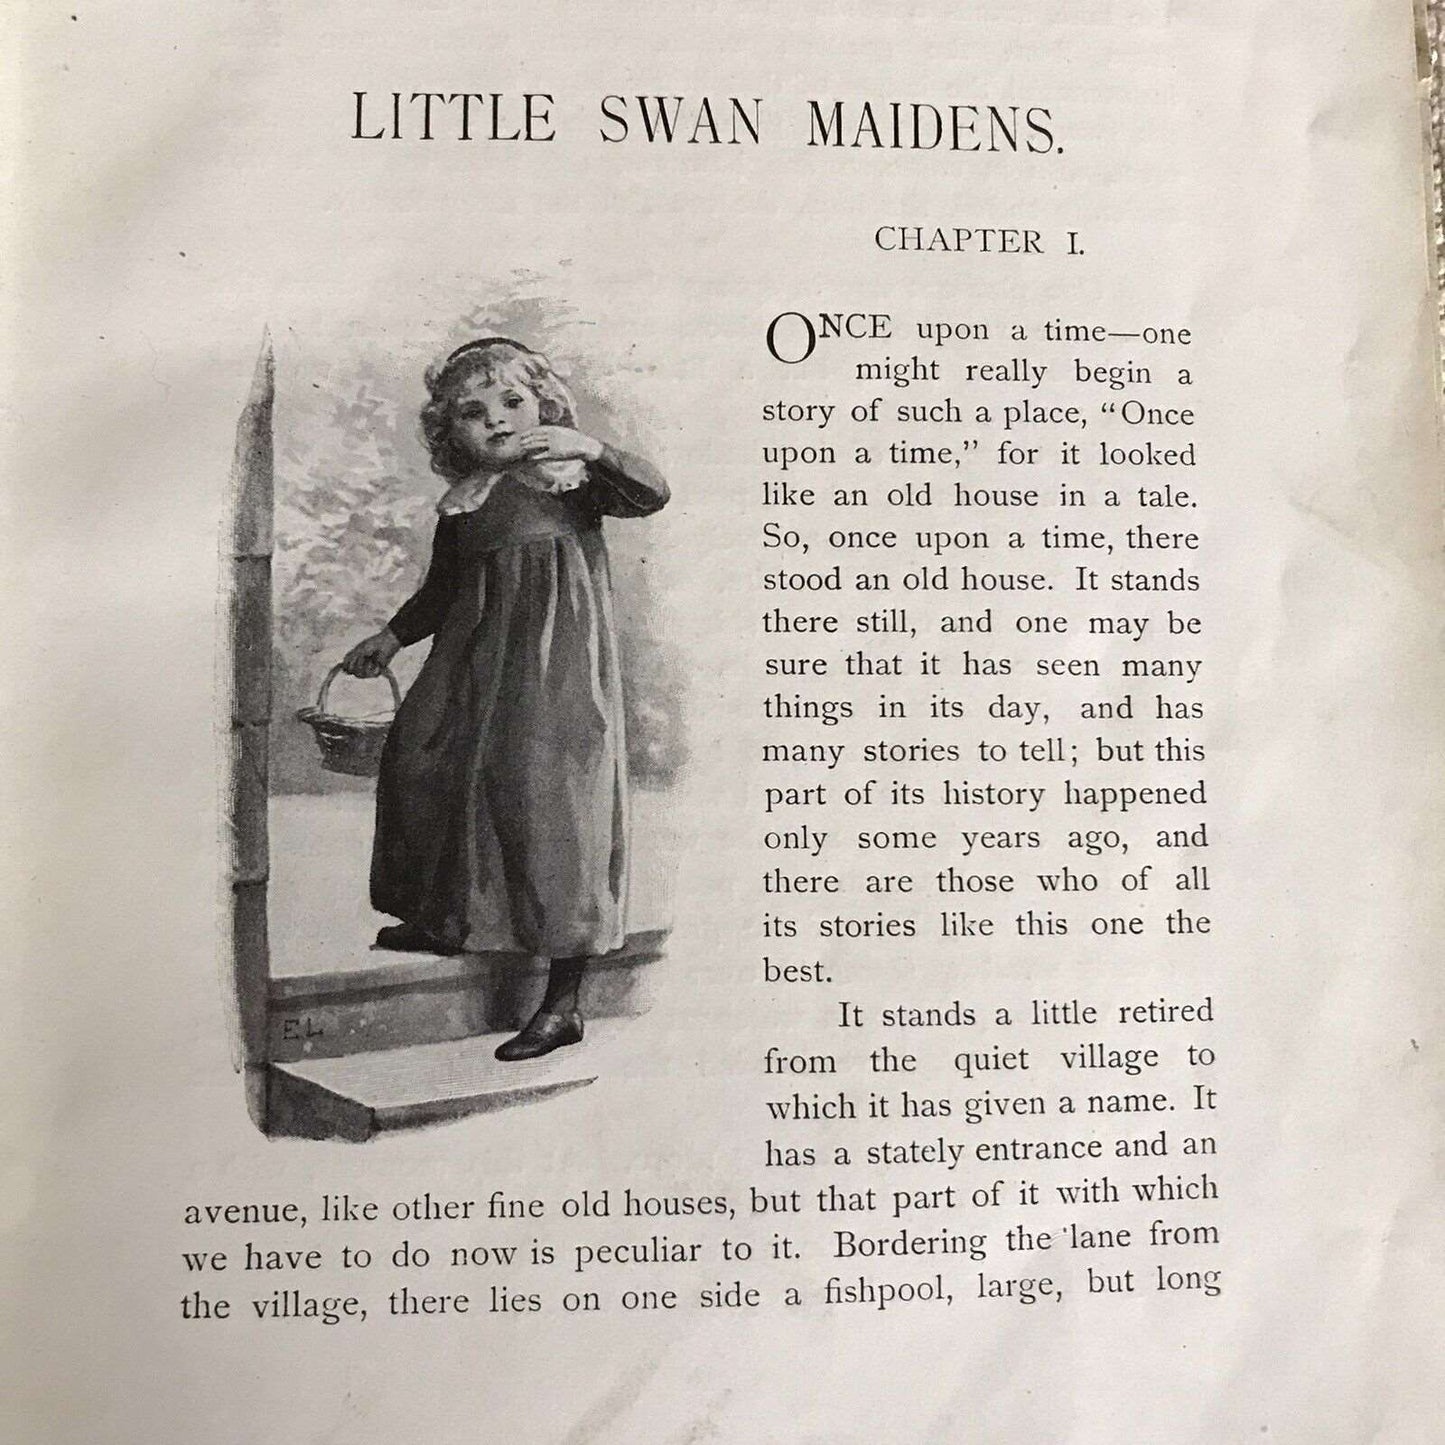 1925 Little Swan Maidens- Frances E. Crompton(Evelyn Lance) Nister Honeyburn Books (UK)